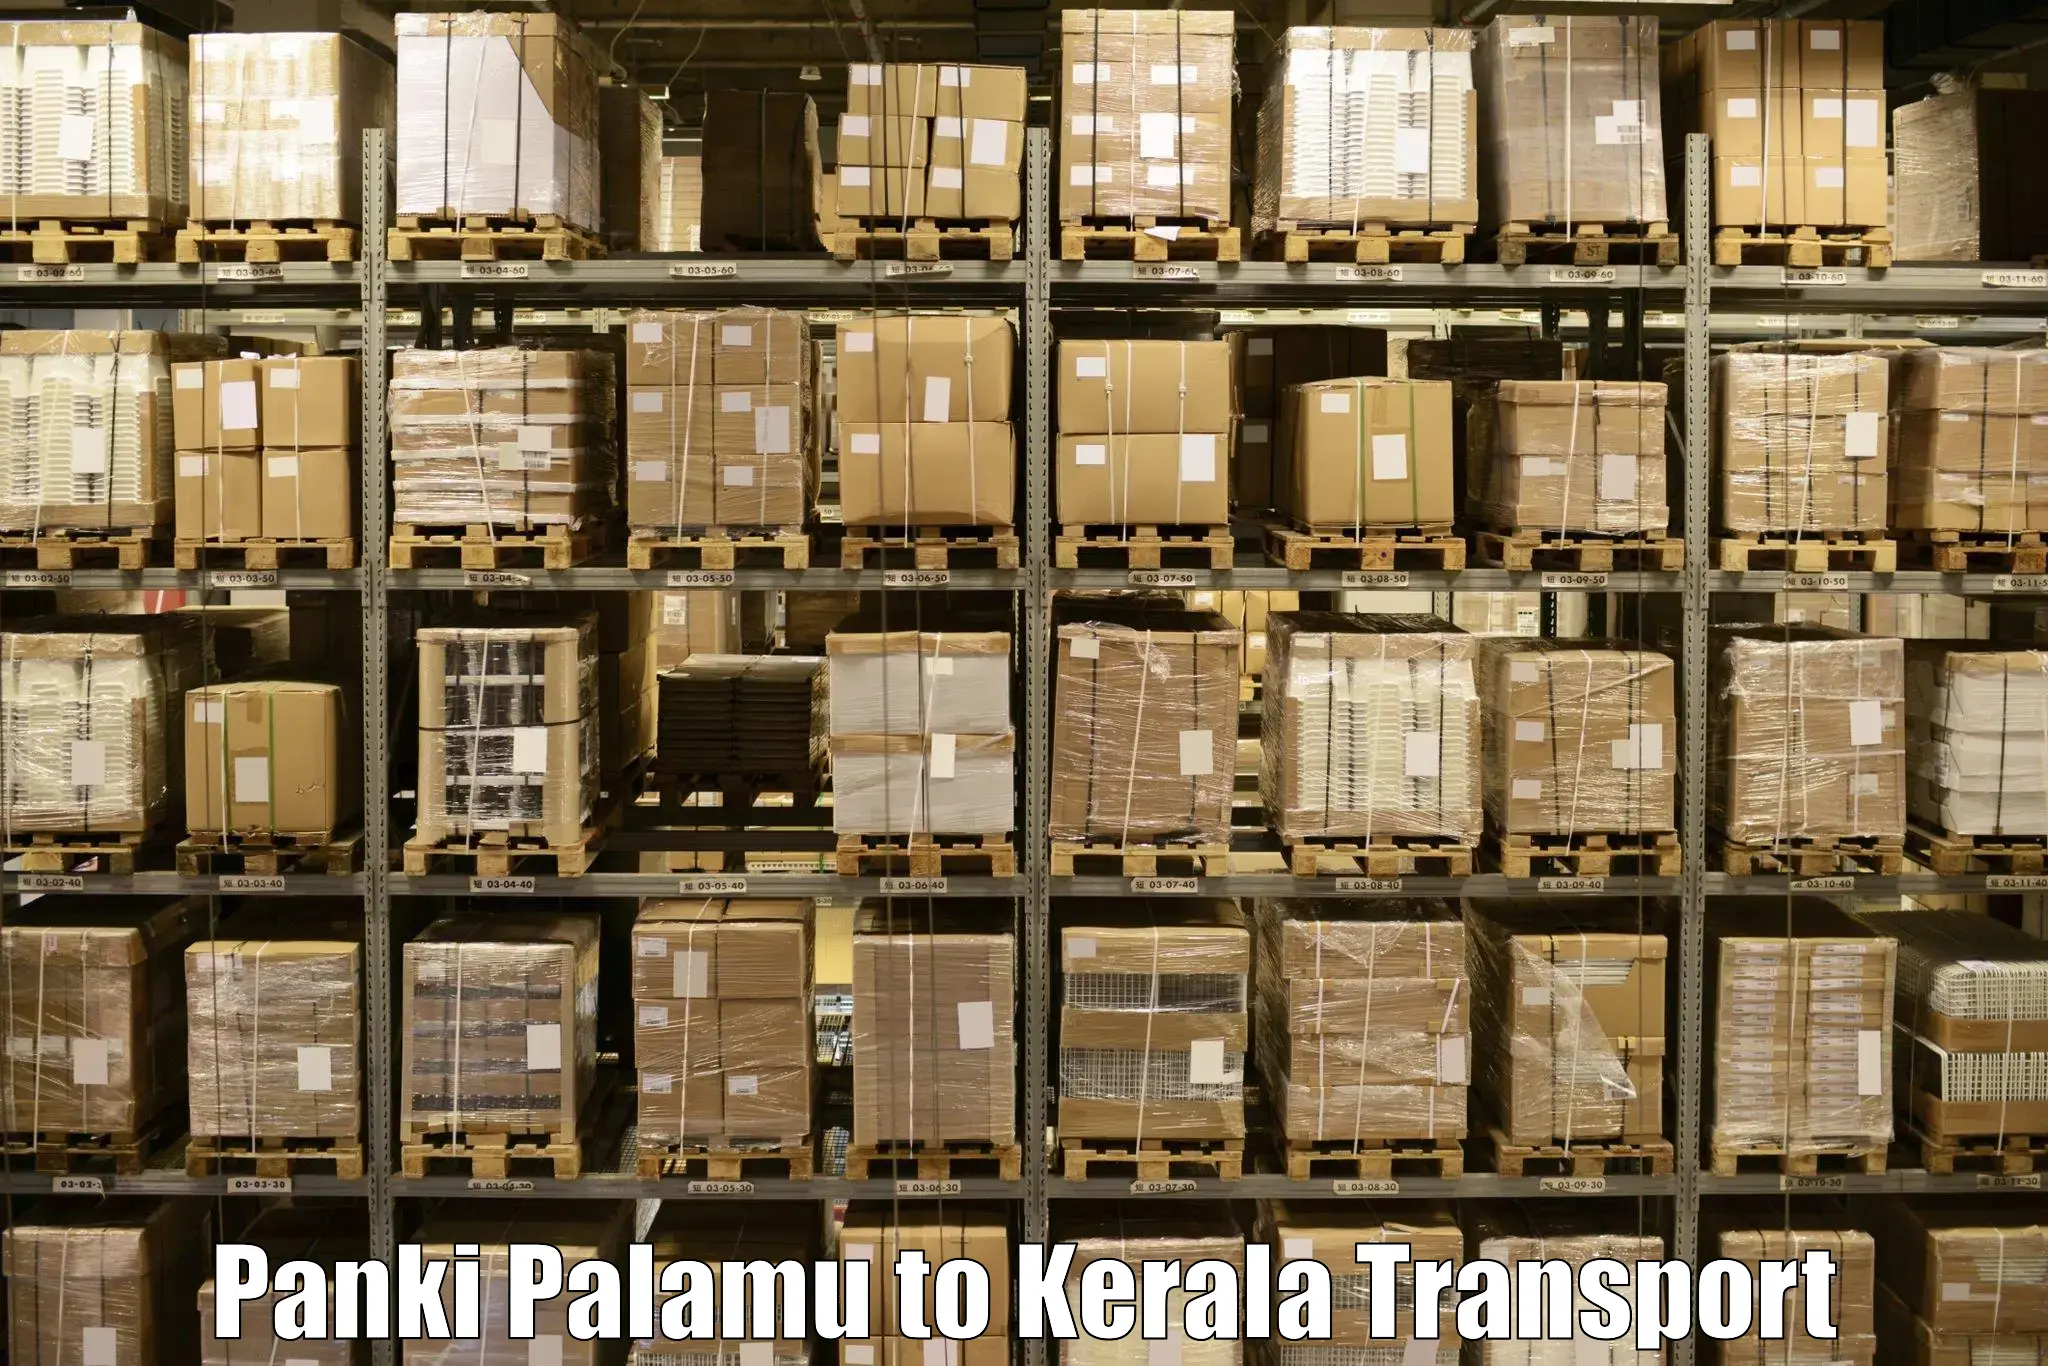 Nearest transport service Panki Palamu to Kerala